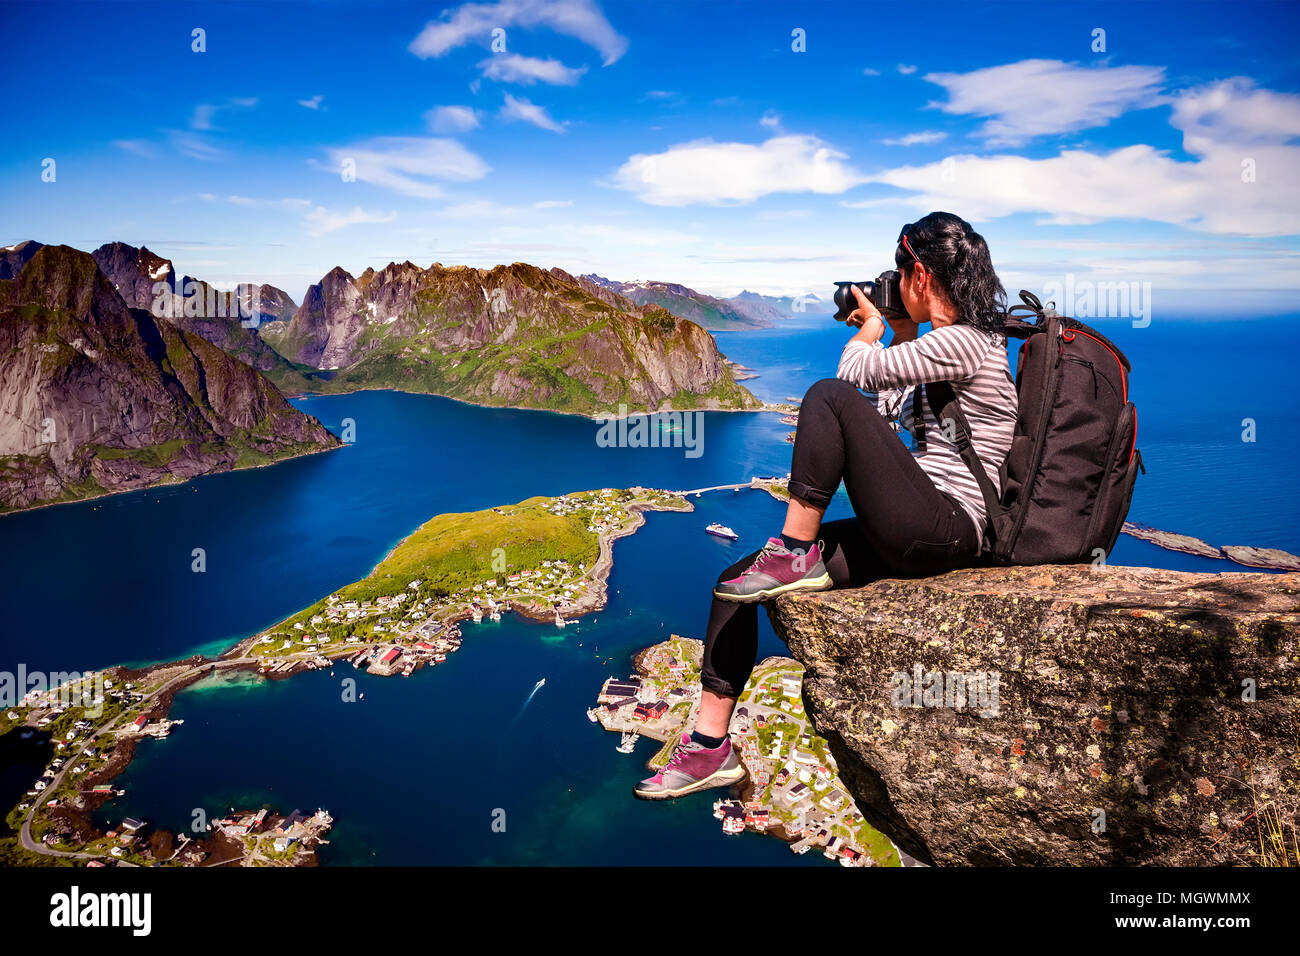 Natur-Fotograf-Tourist mit Kamera schießt beim stehen oben auf dem Berg. Schöne Natur Norwegen Lofoten-Inselgruppe. Stockfoto